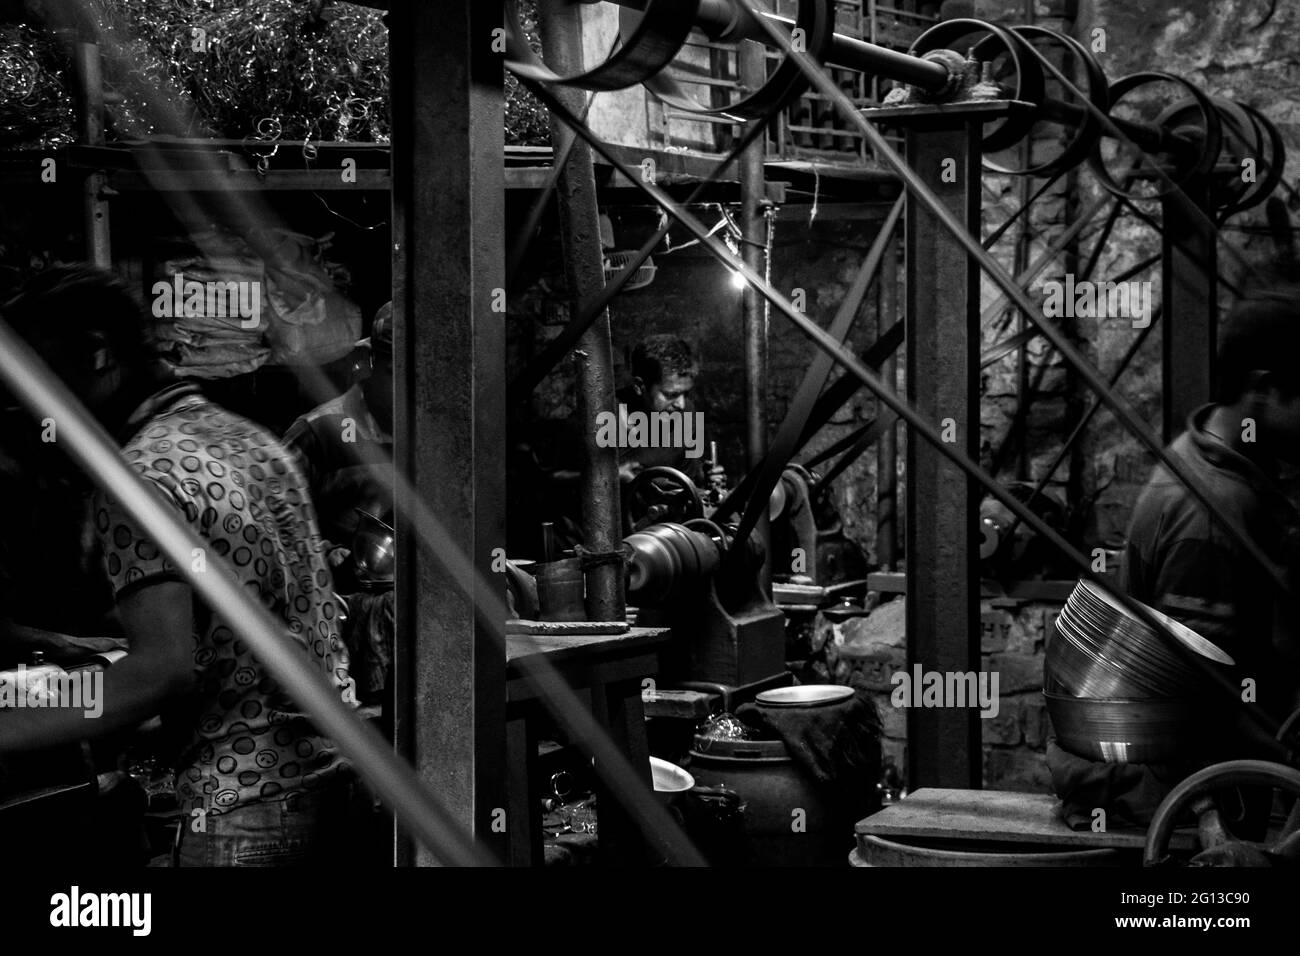 Mouvement de travail des personnes dans une usine d'aluminium, cette image a été prise le 13 février 2019 à Dhaka, Bangladesh, Asie du Sud Banque D'Images